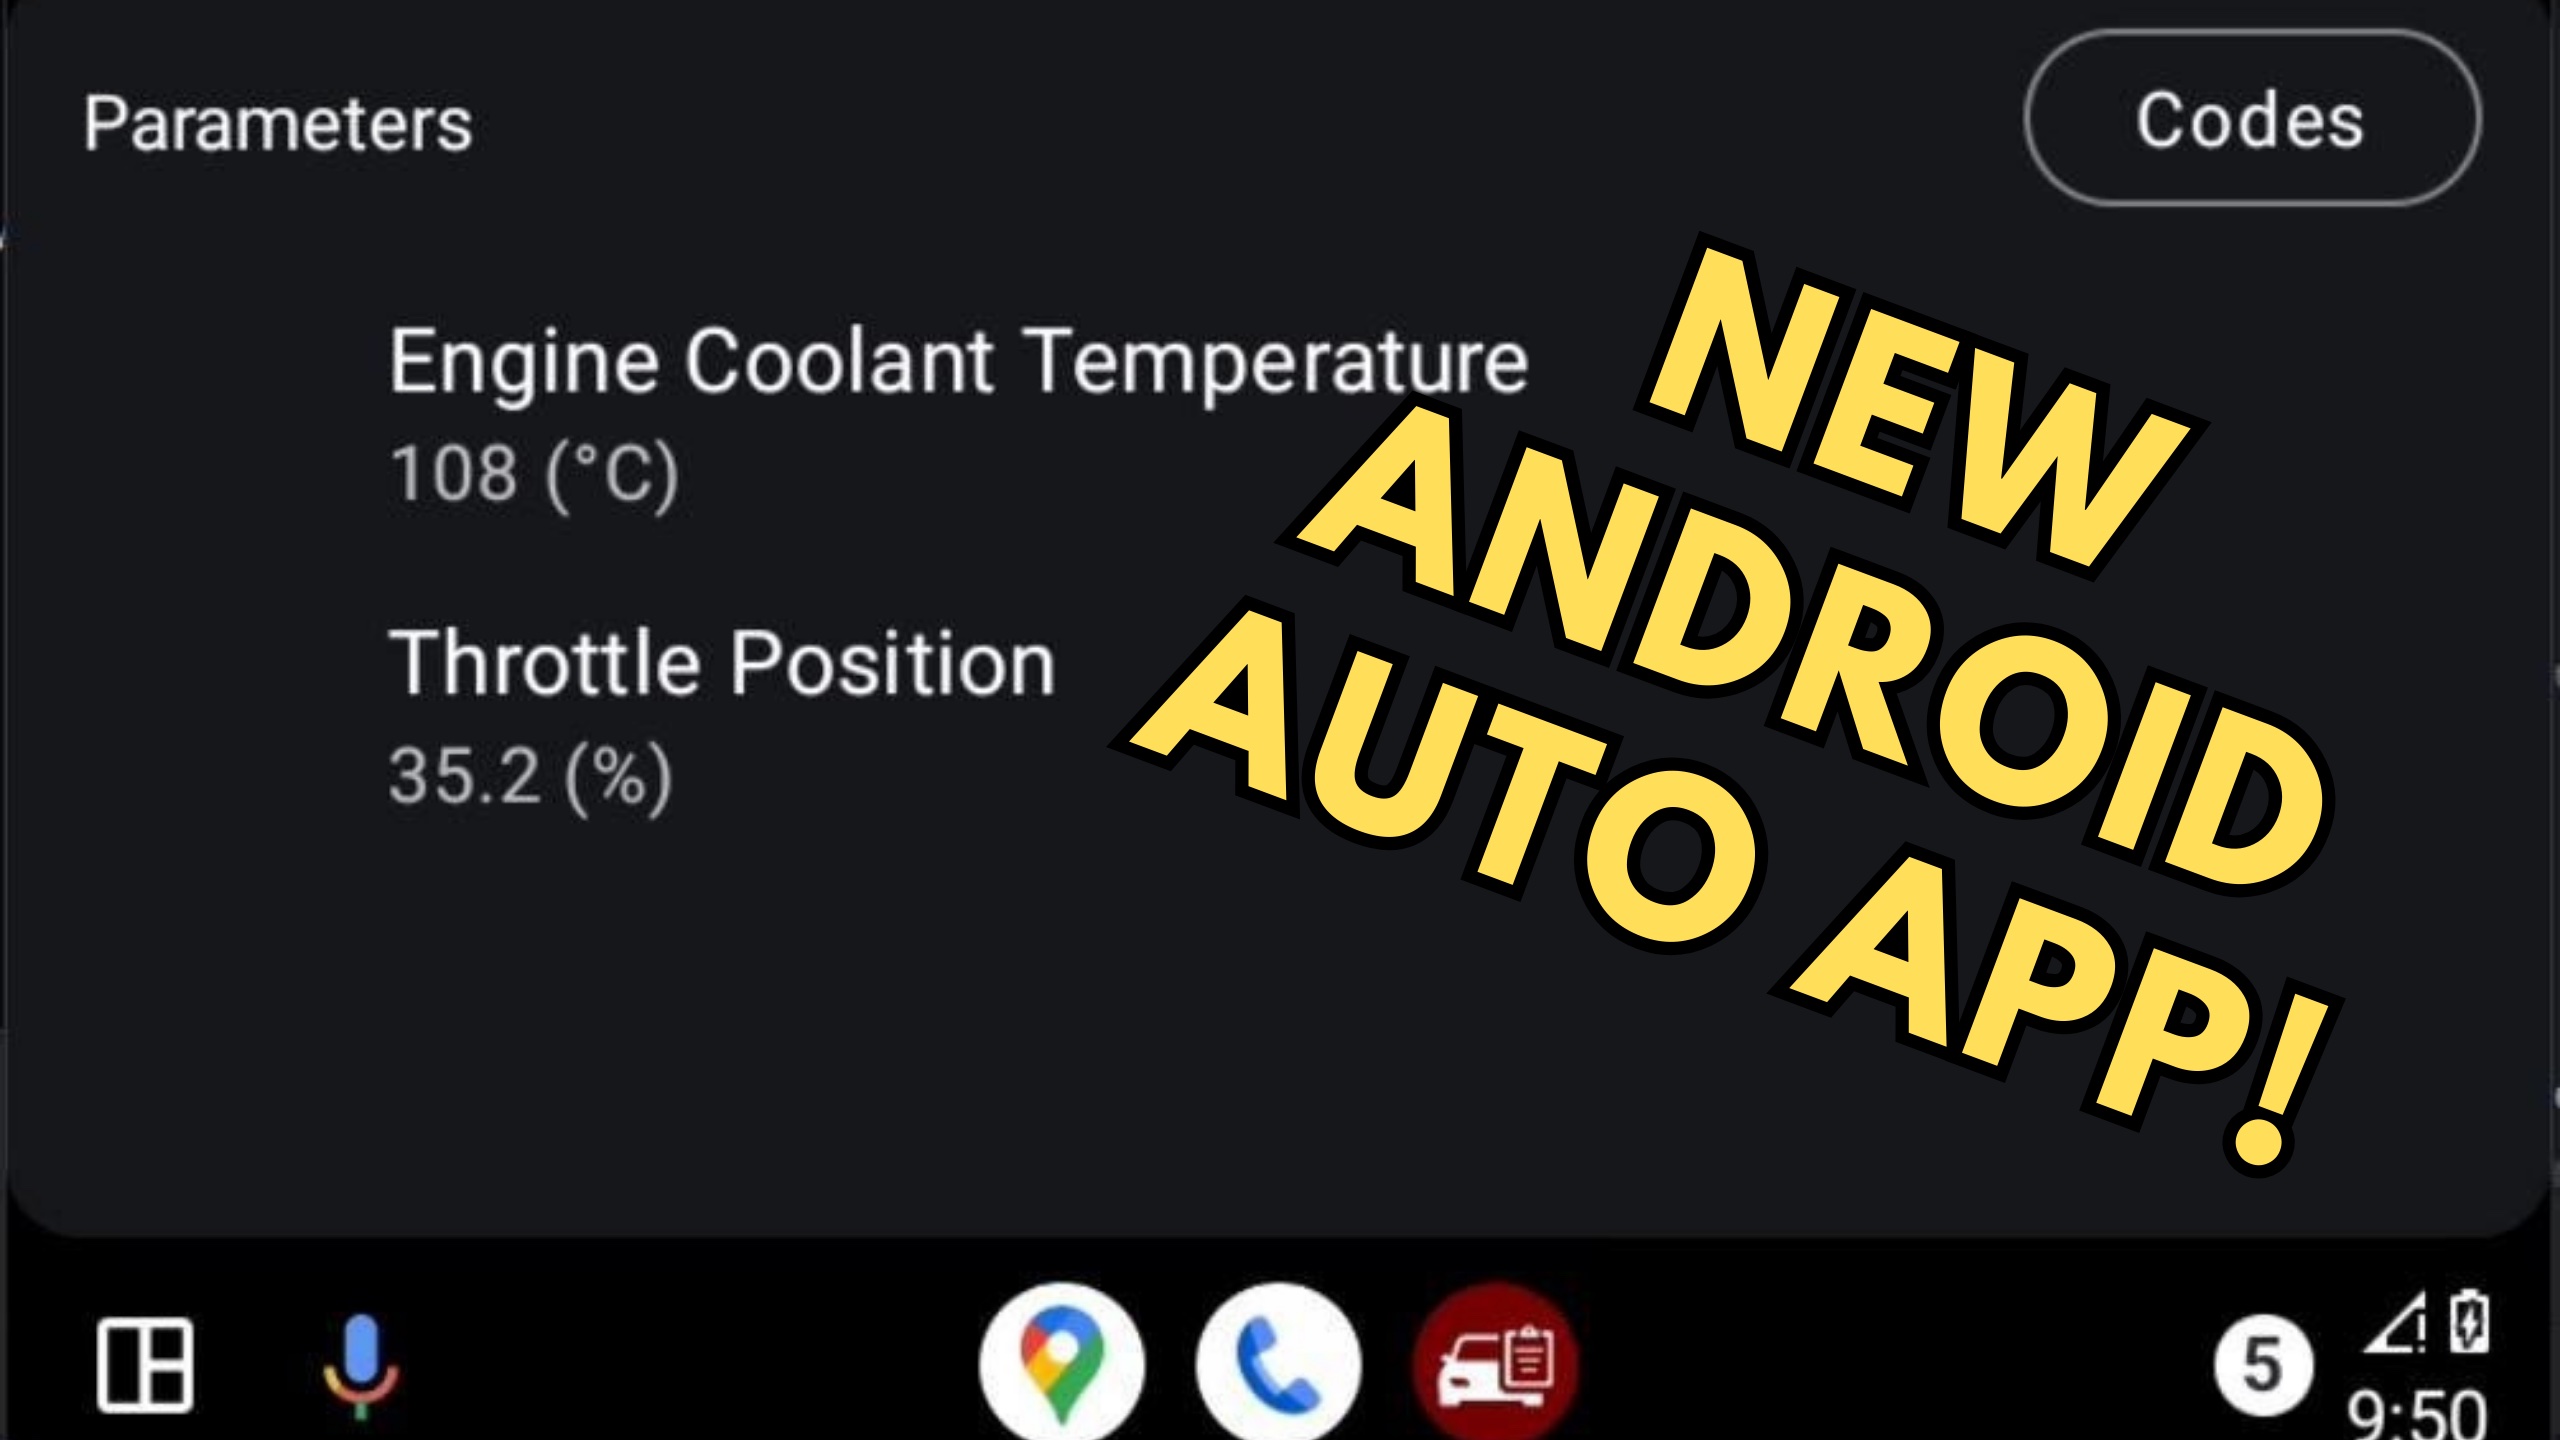 De Android Auto Obd2-app kan nu worden gedownload